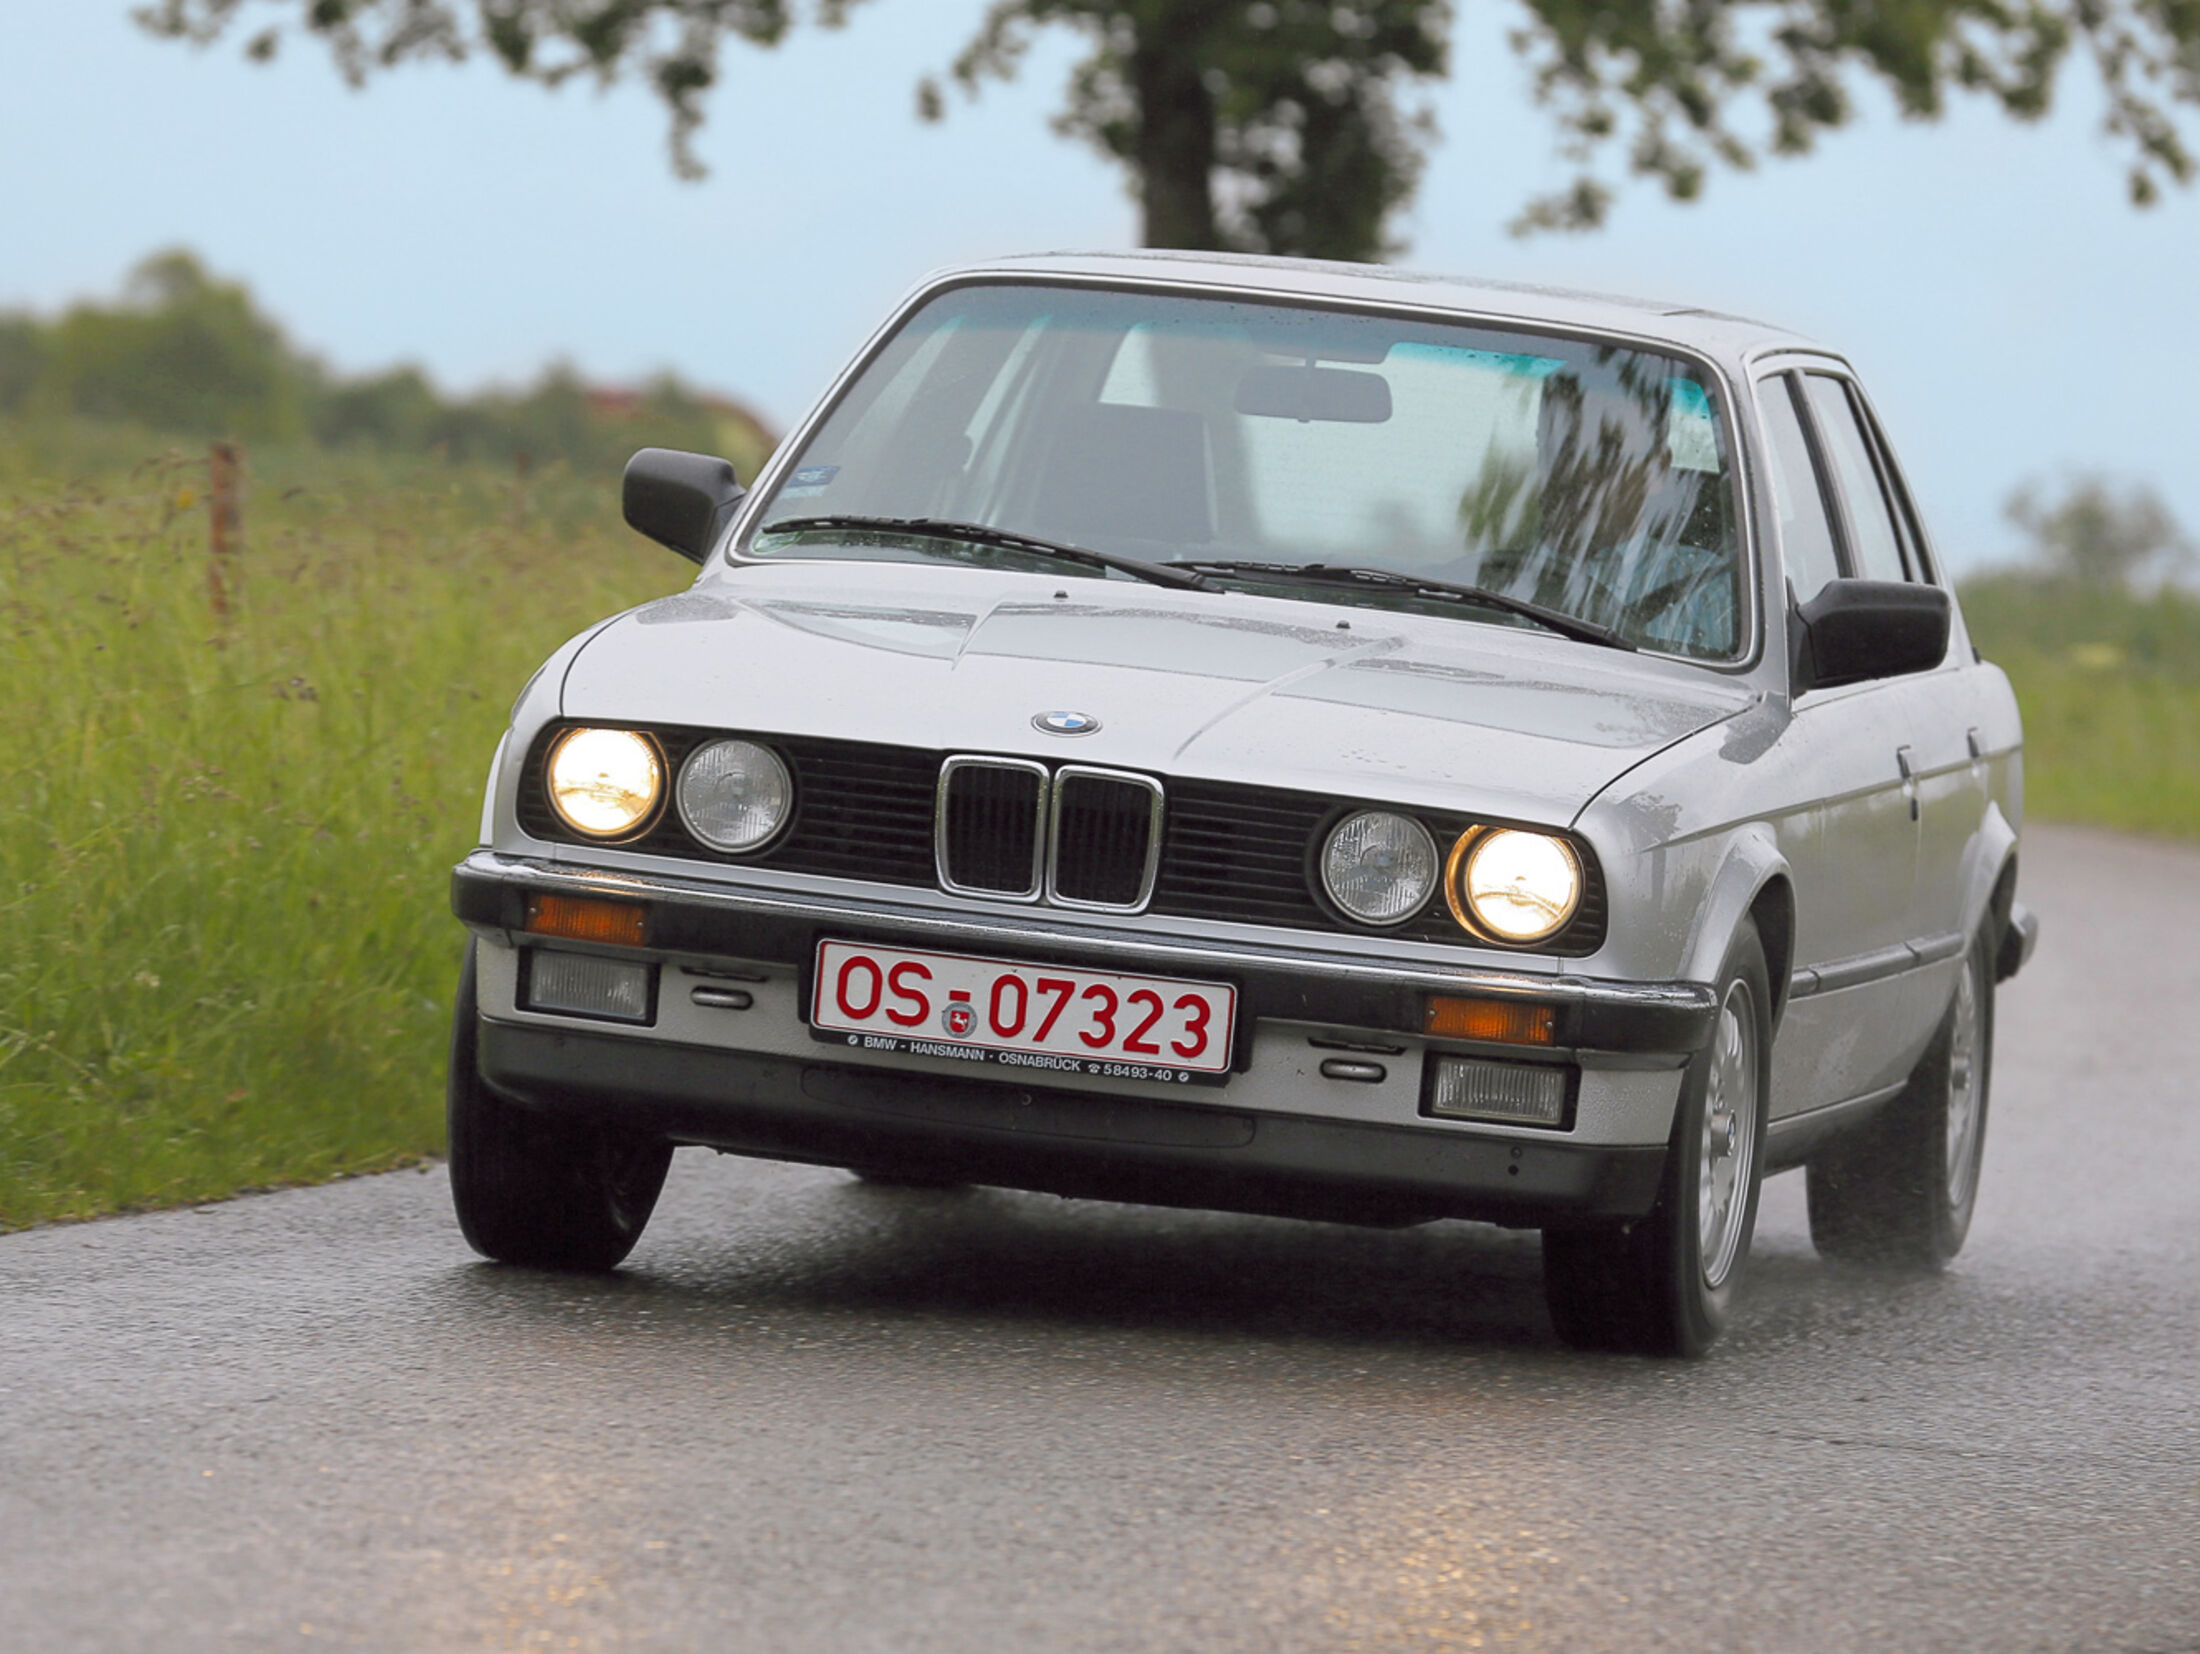 BMW motorsport kennzeichenhalter für Autos selbst gestalten, online kaufen!